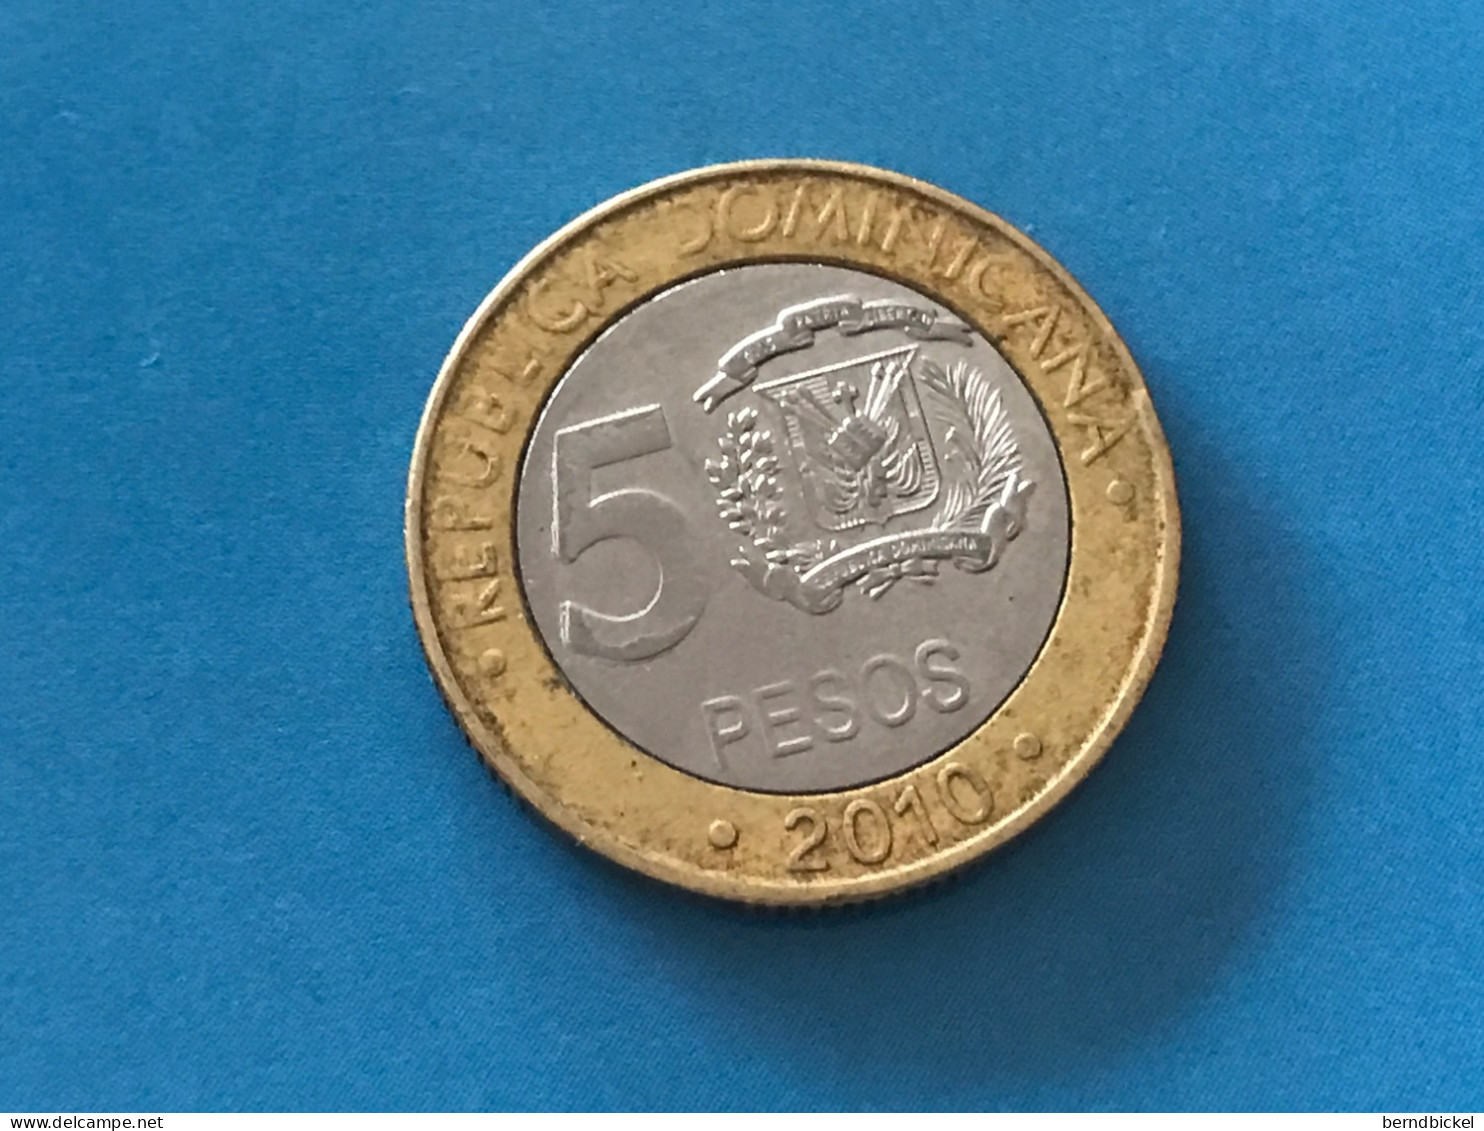 Münze Münzen Umlaufmünze Dominikanische Republik 5 Pesos 2010 - Dominicaanse Republiek